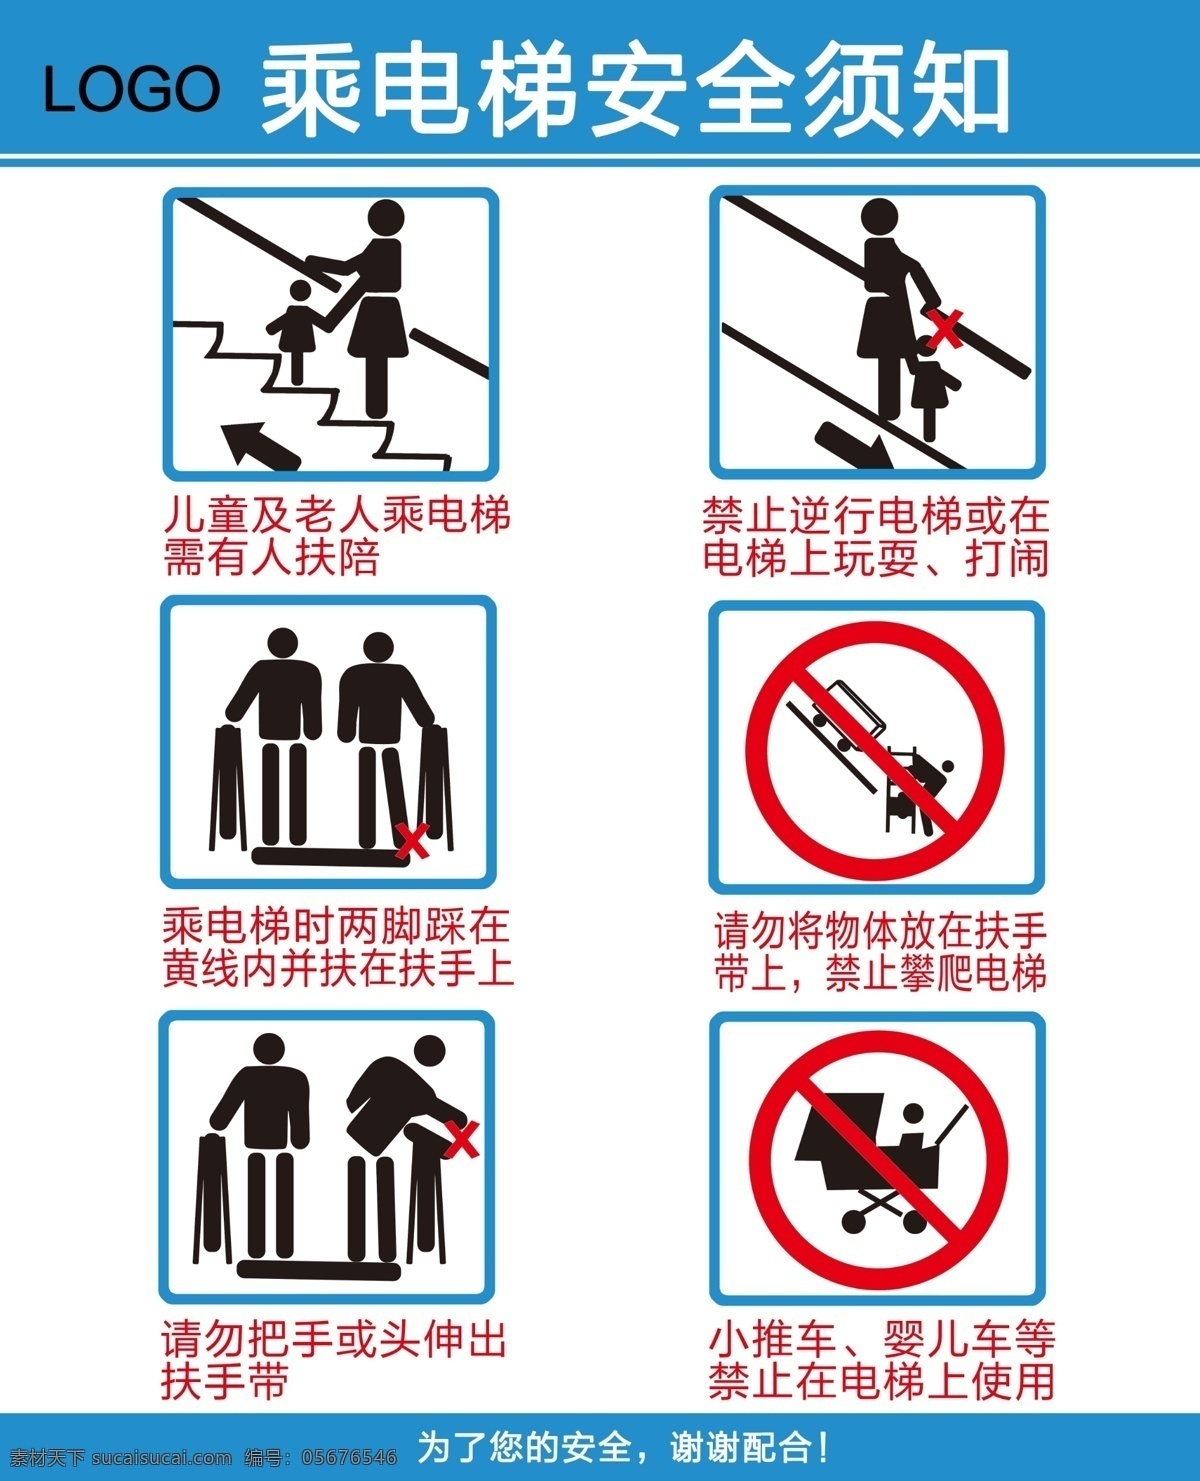 电梯 安全 须知 电梯须知 电梯提示 电梯安全 电梯提示牌 乘电梯须知 安全须知